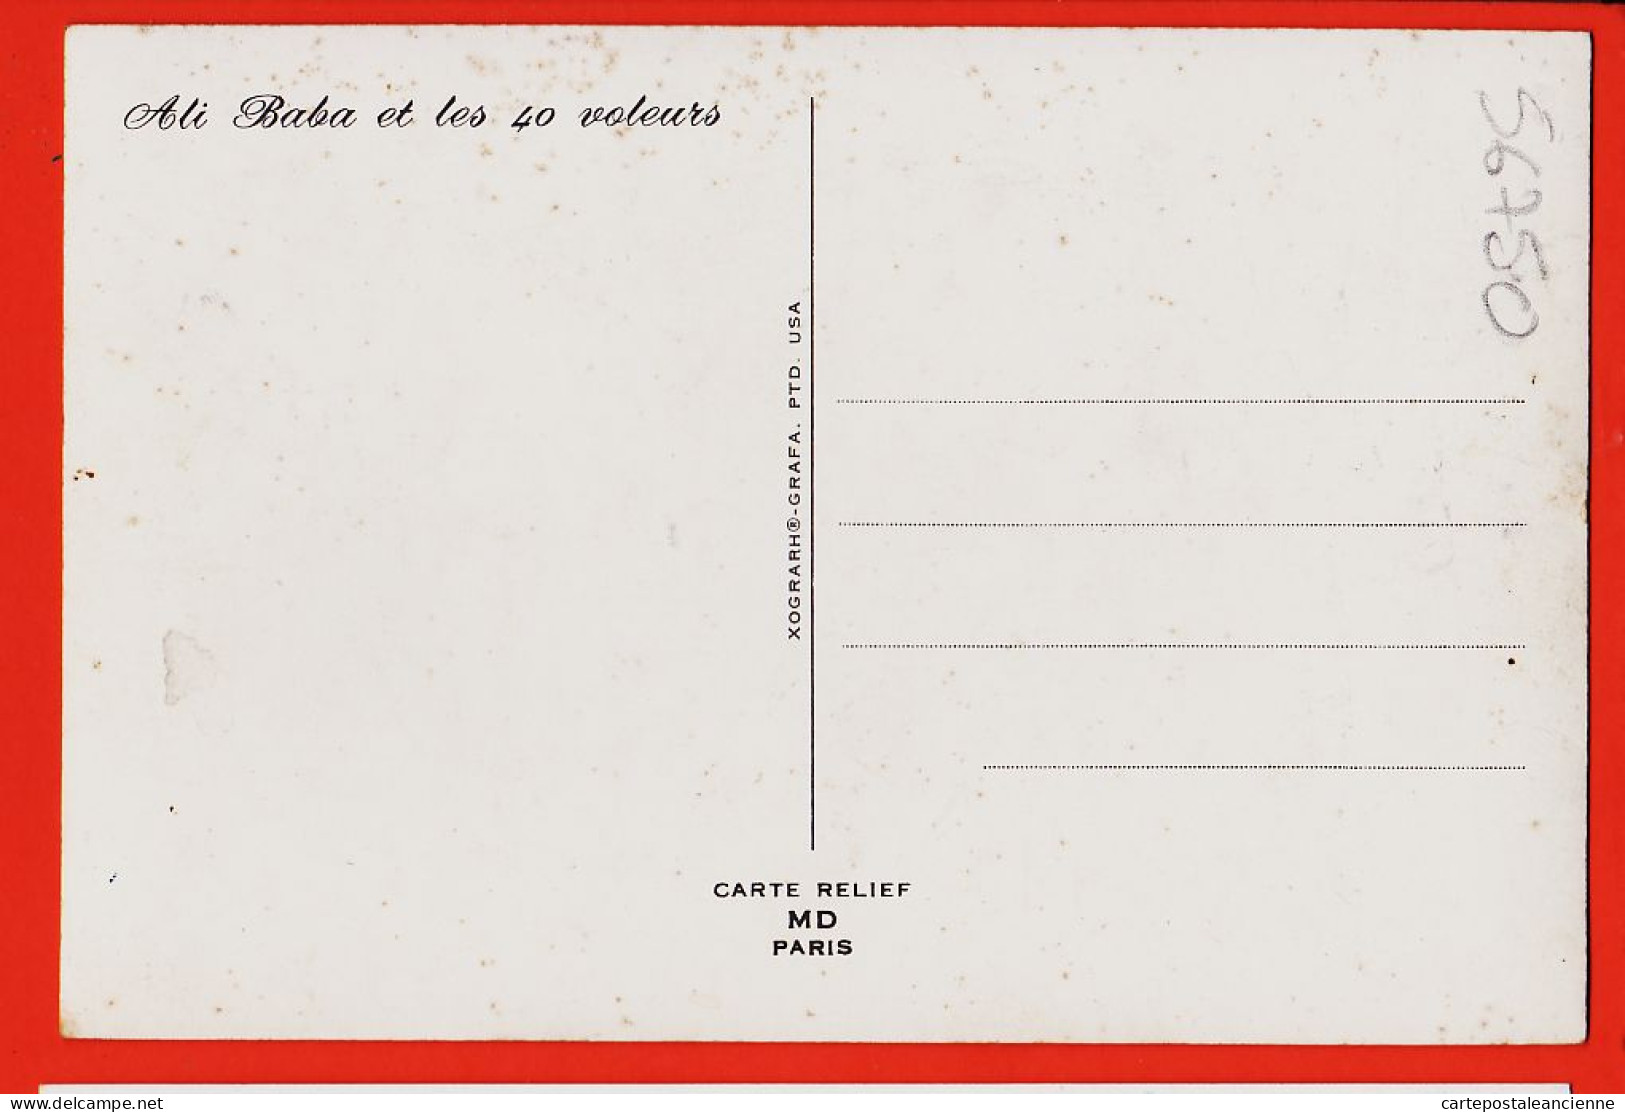 05513 ● ● Carte 3D ALI BABA Et Les 40 VOLEURS 1965s MD Paris  XOGRAPH-GRAFA PTD USA  - Contes, Fables & Légendes